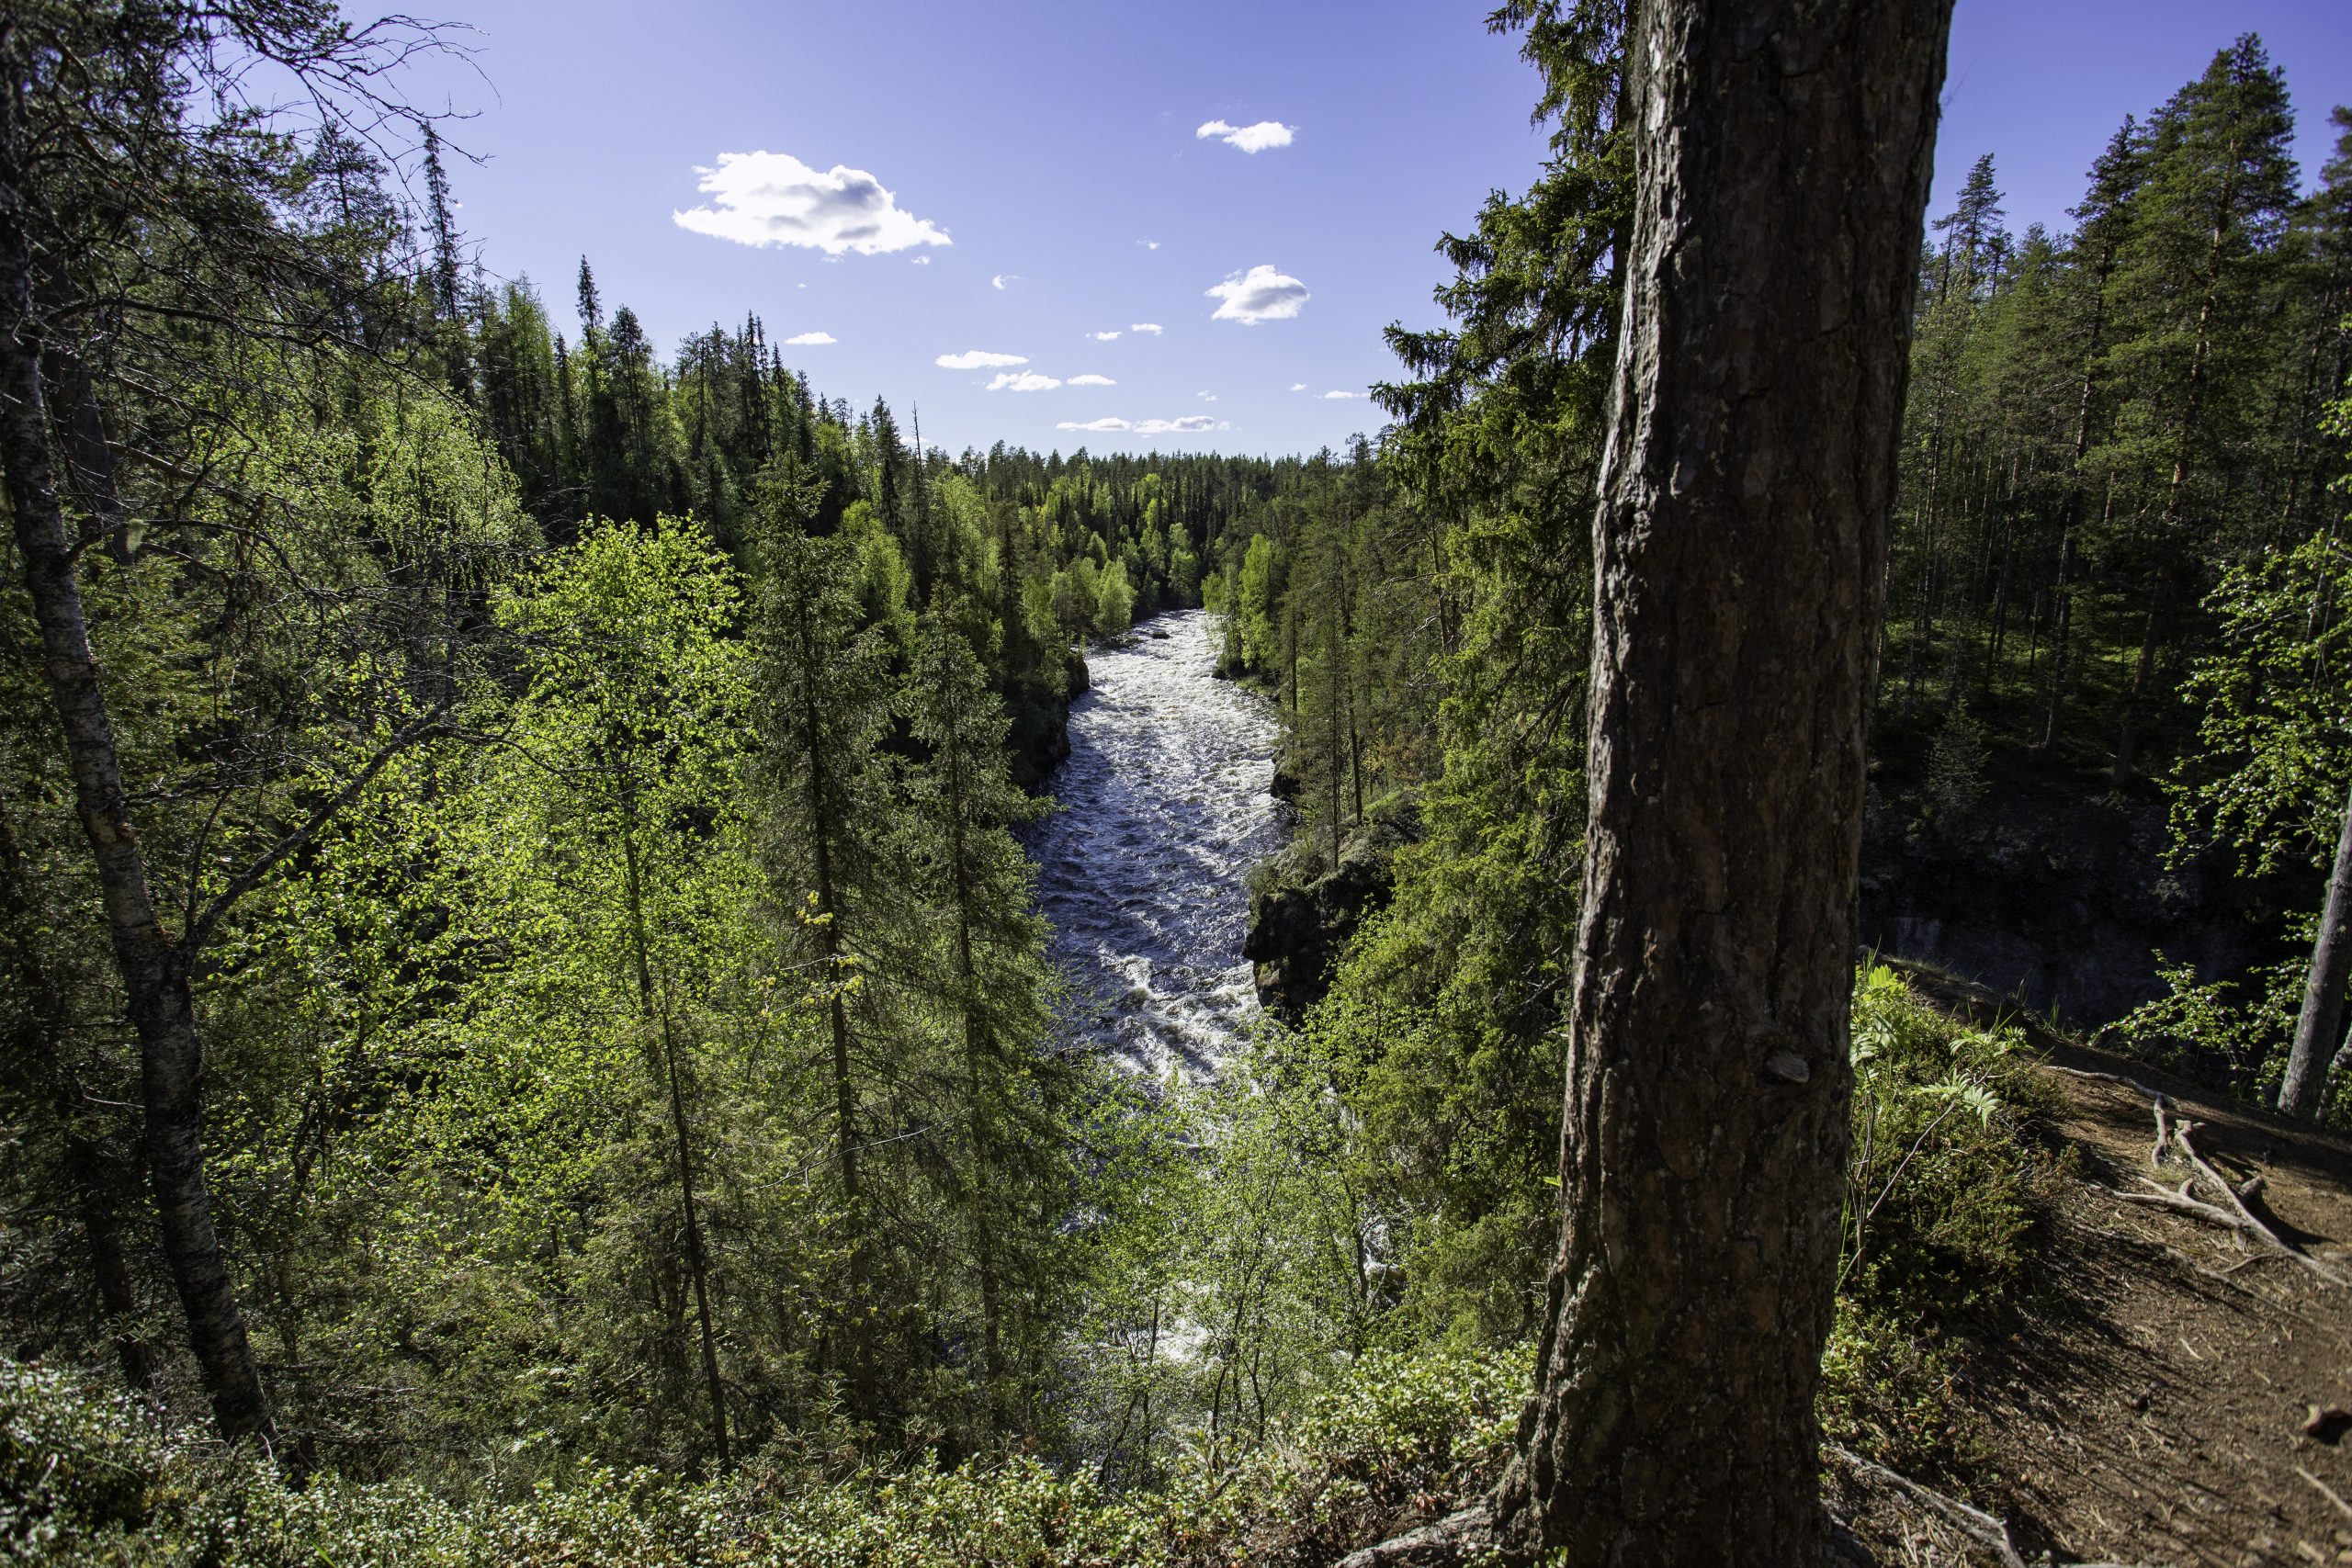 Aallokkokoski Rapids flowing through a forest